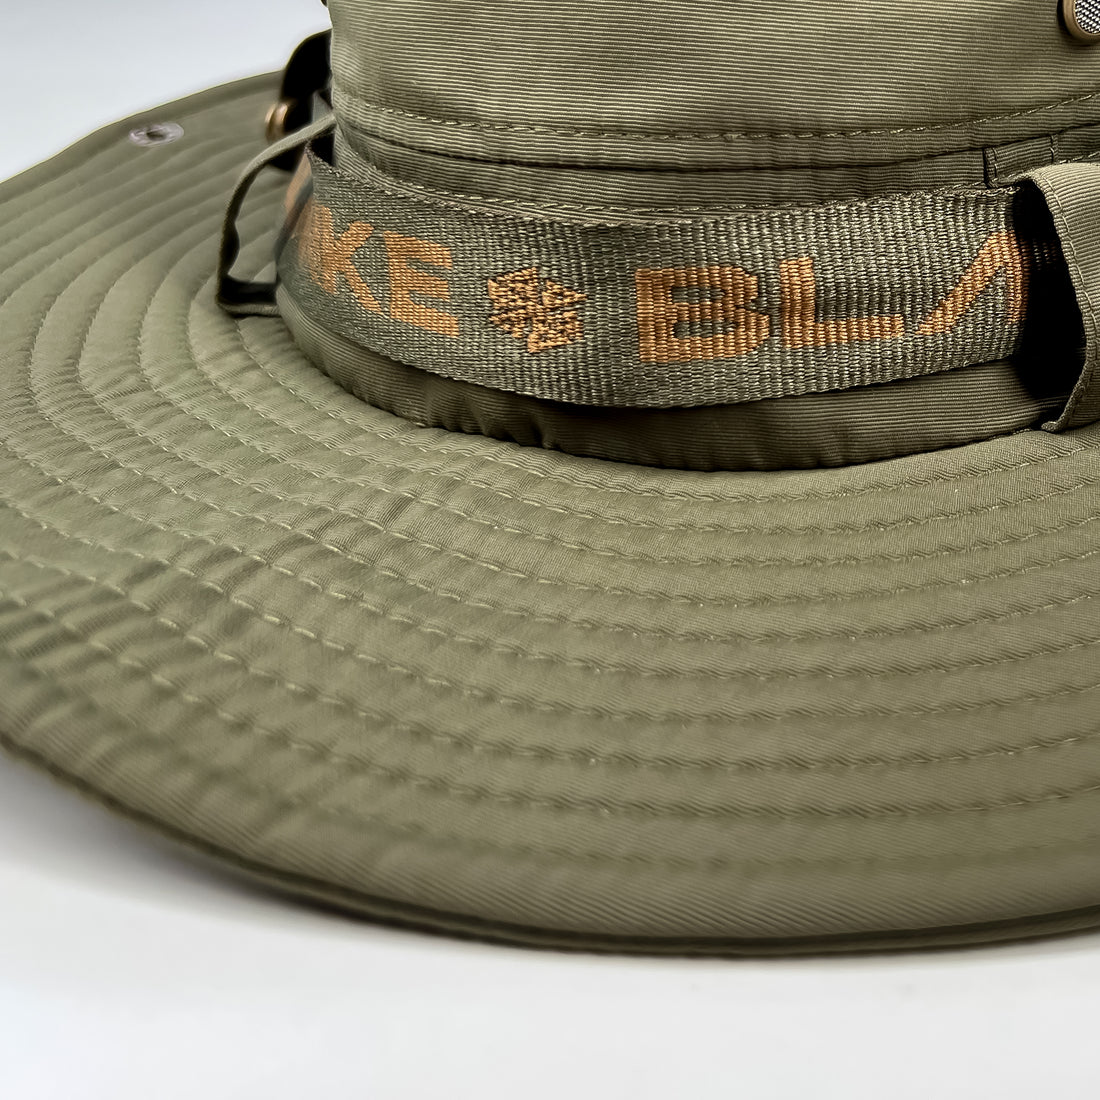 Blanke - Bush Hat